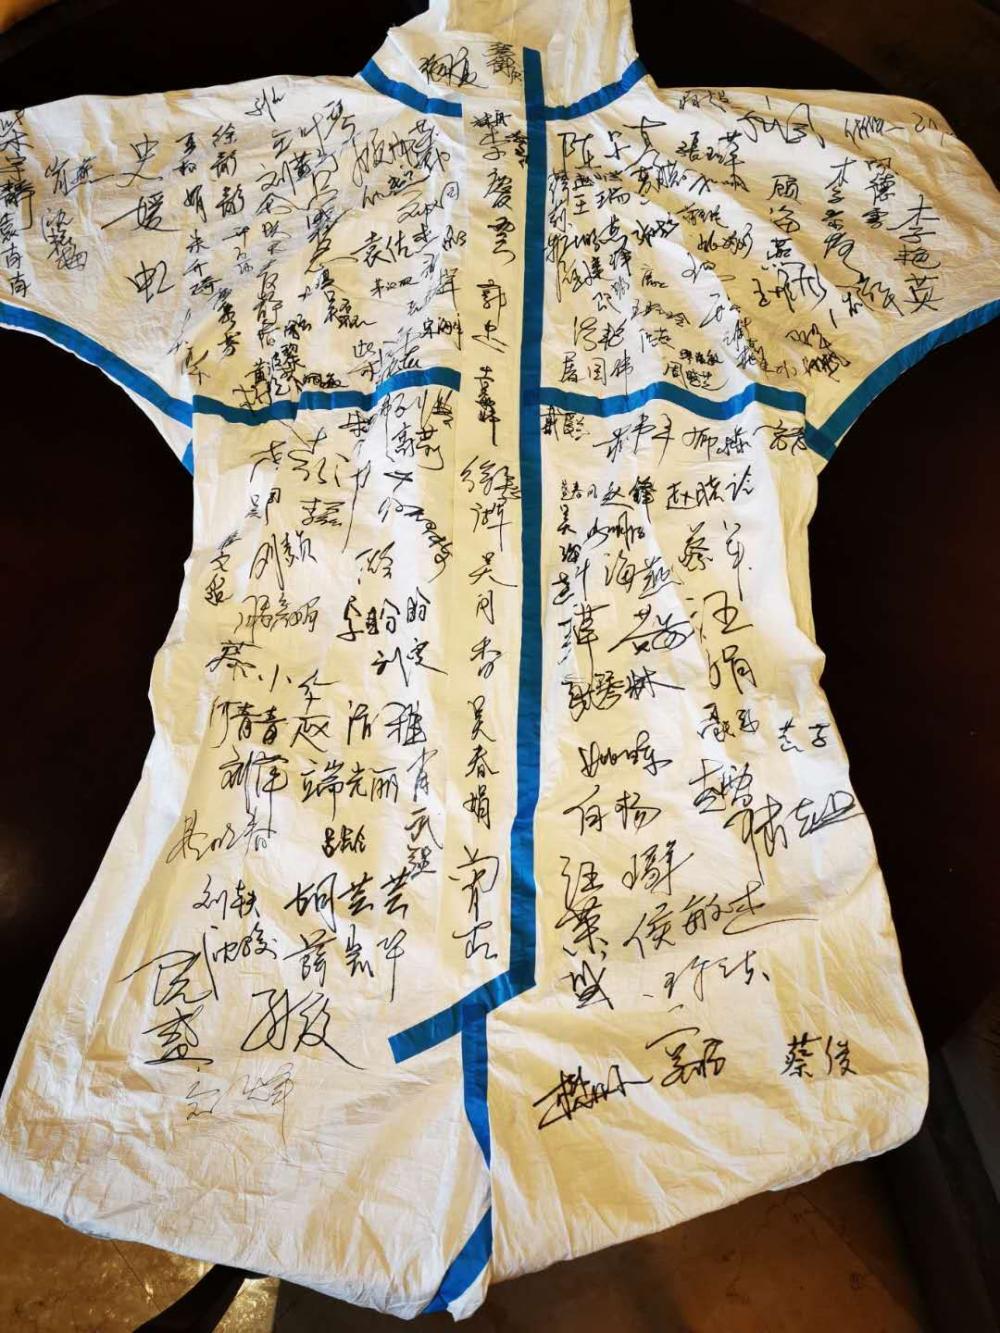 上海援鄂医疗队赠给锦江的签名防护服